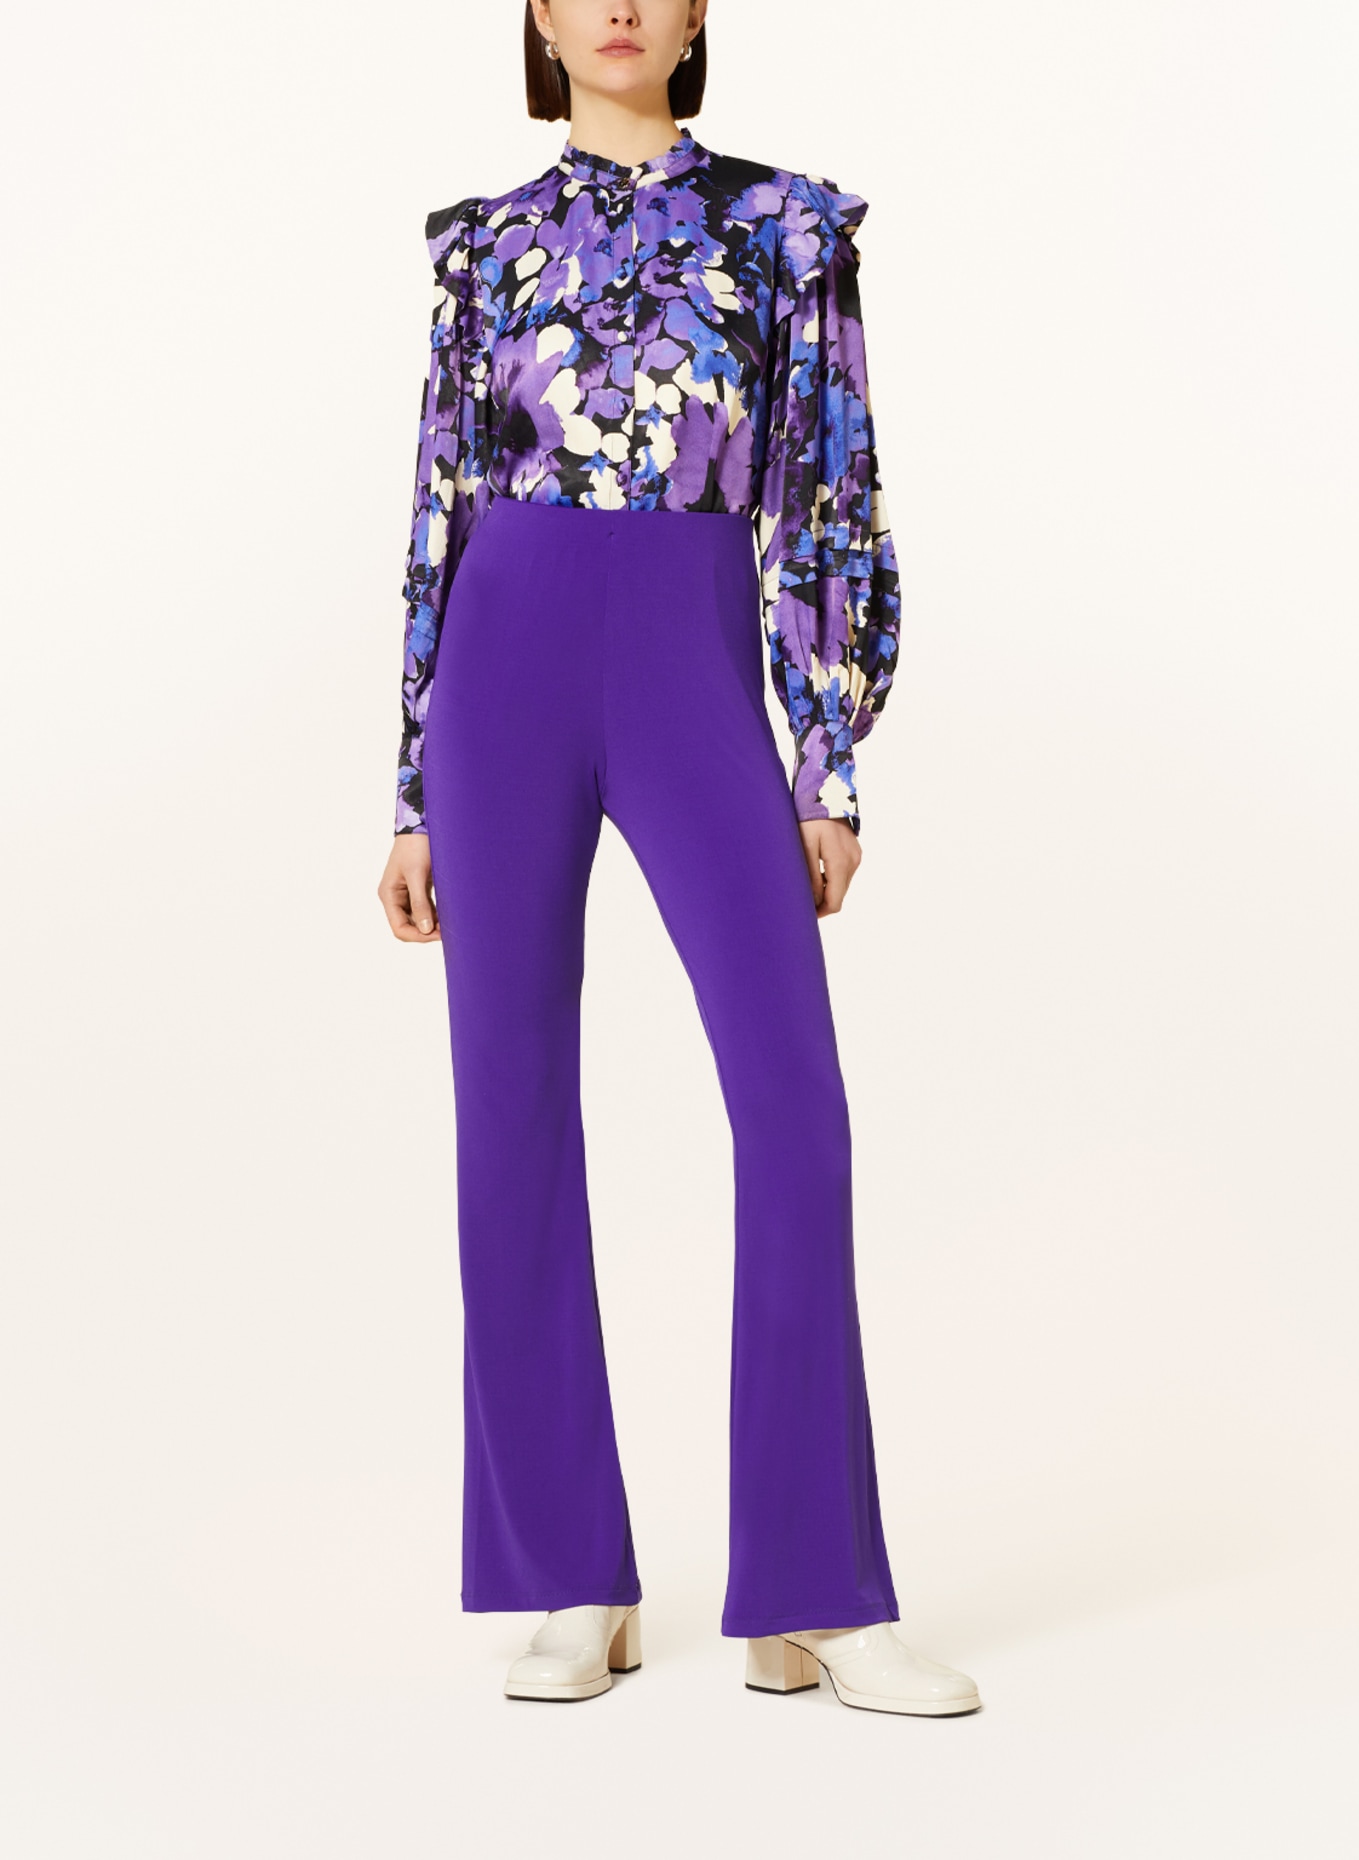 FABIENNE CHAPOT Satin blouse PHILO with ruffles, Color: PURPLE/ BLACK/ ECRU (Image 2)